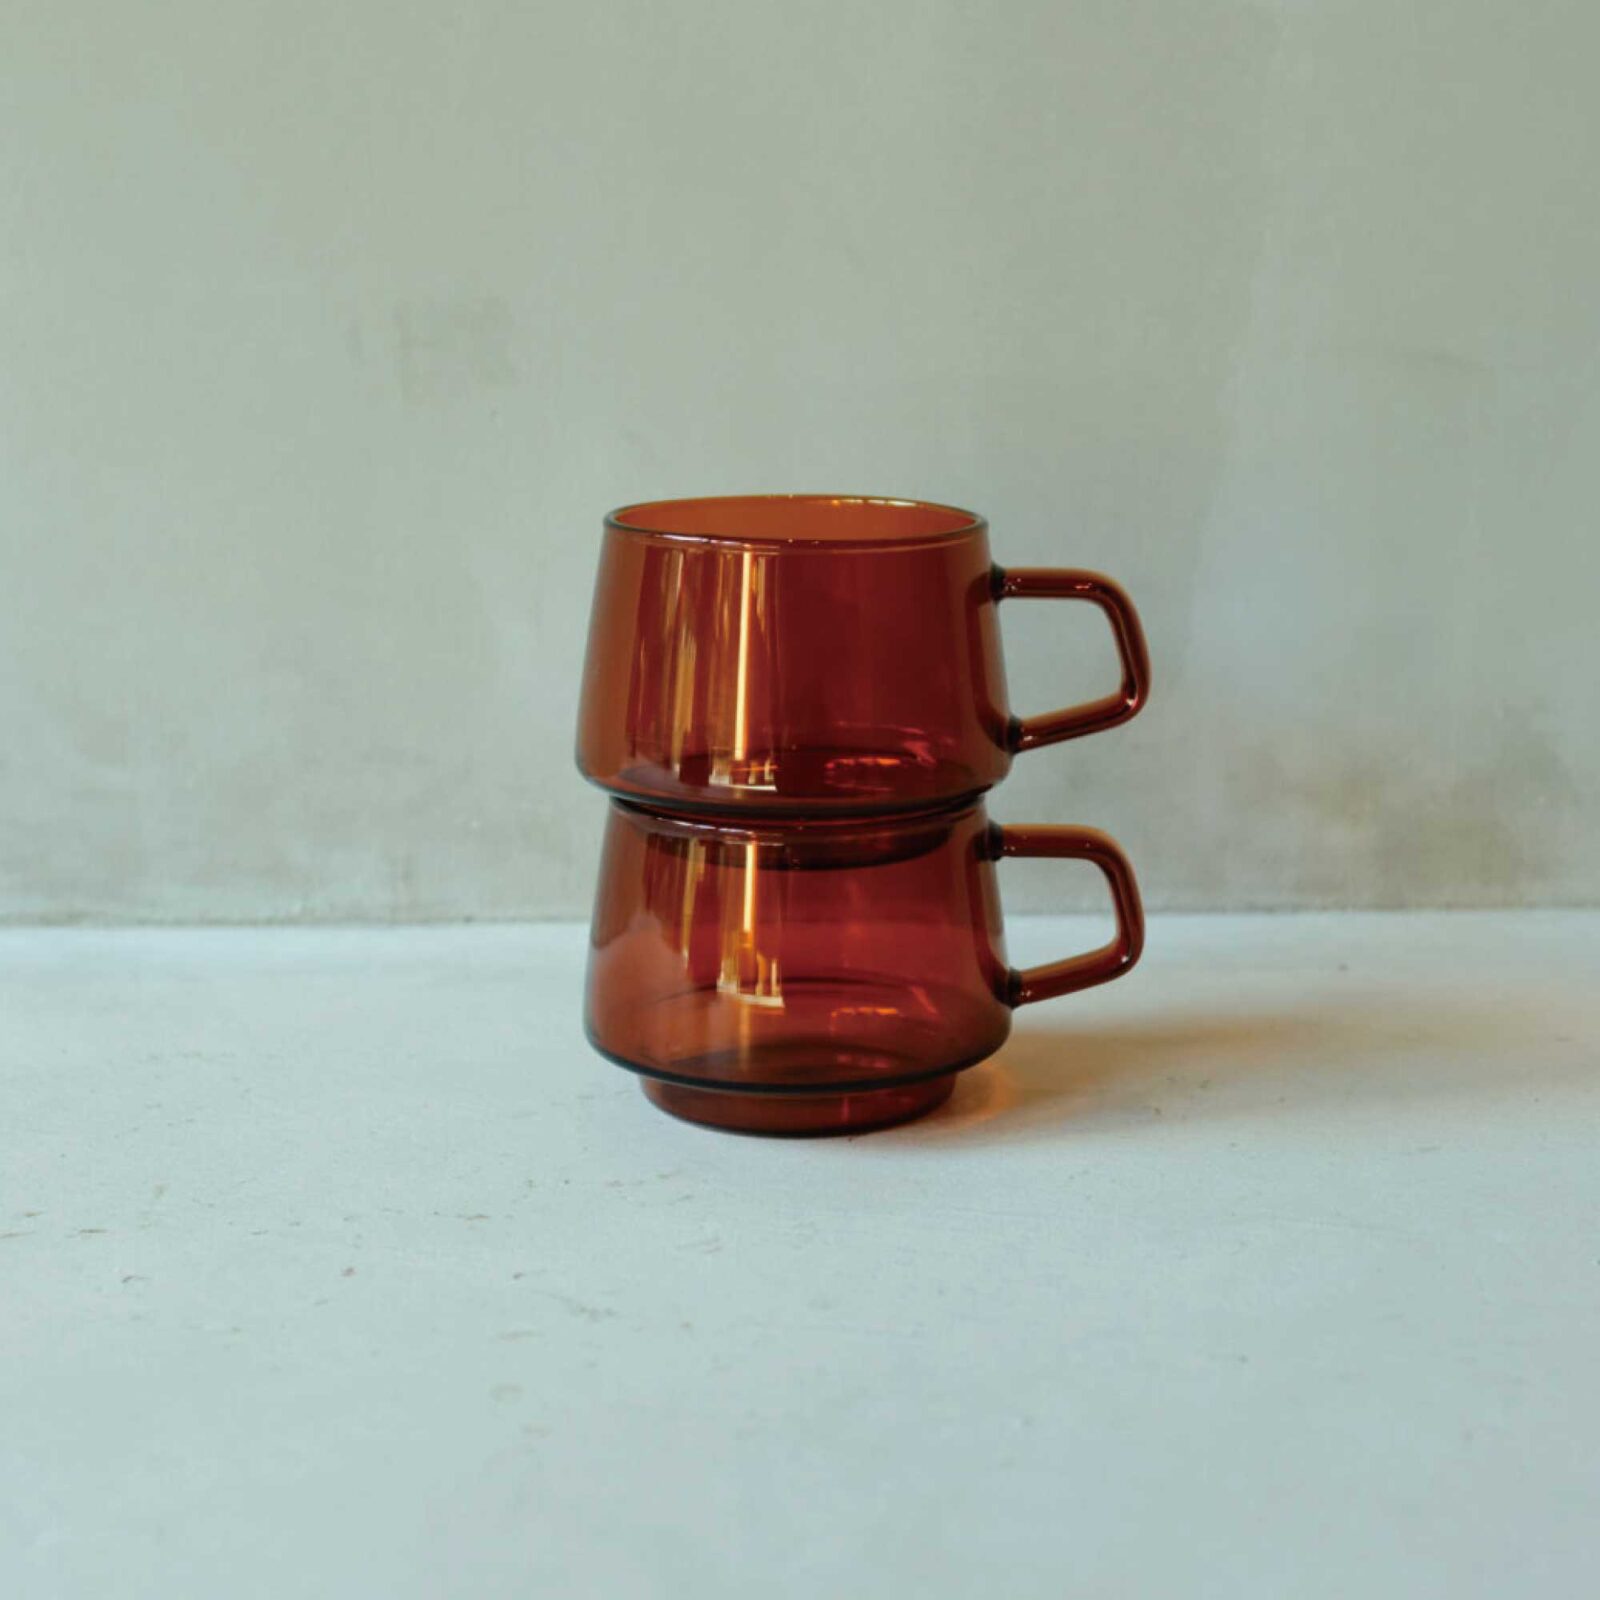 「井上茶寮/M1997」の井上夫妻が愛用する〈キントー〉のSEPIAカップ